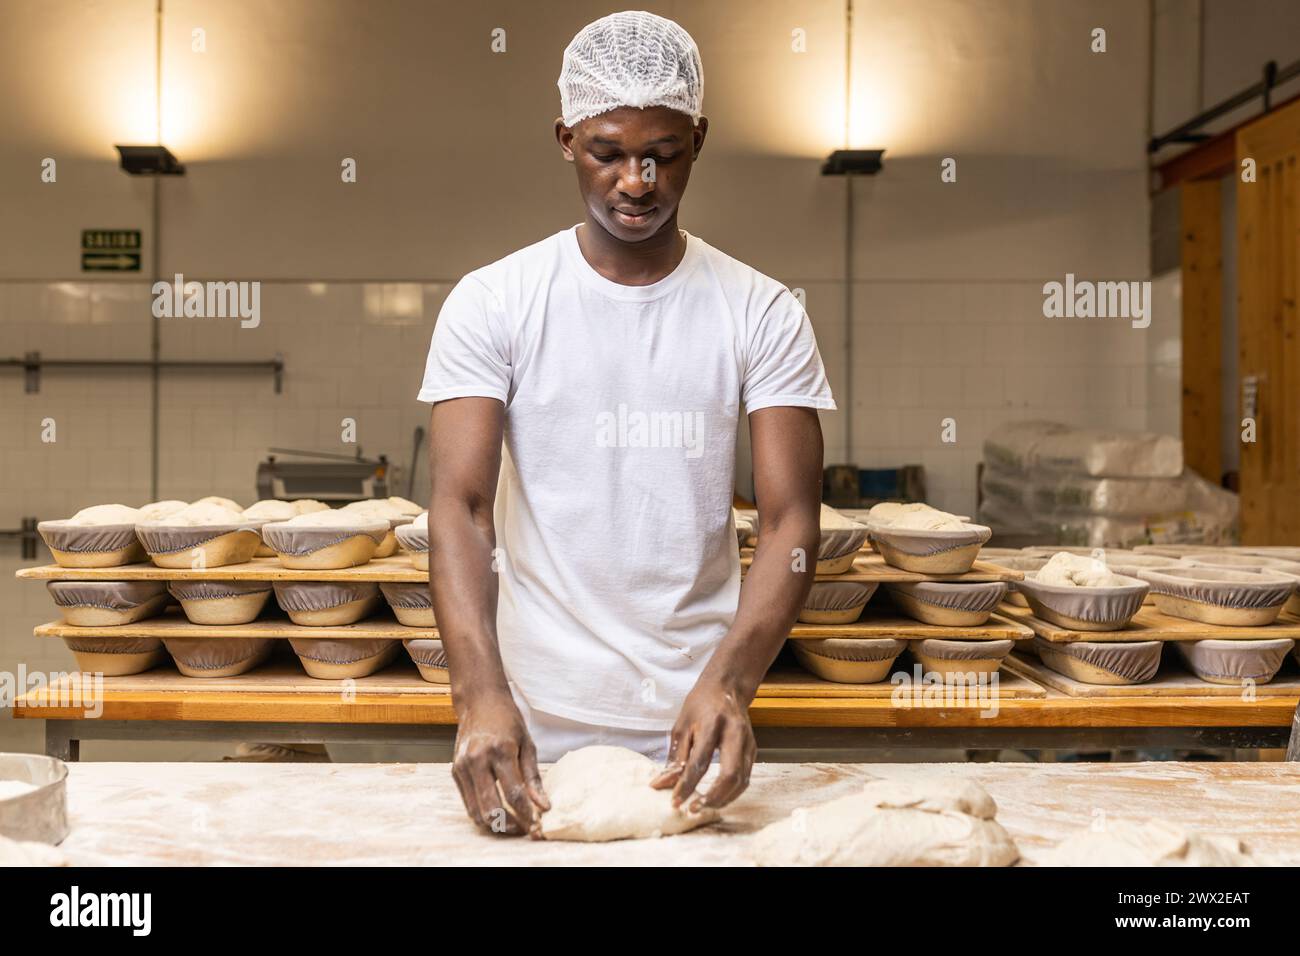 jeune homme noir travaillant dans une fabrique de pain, apprenant le métier. Banque D'Images